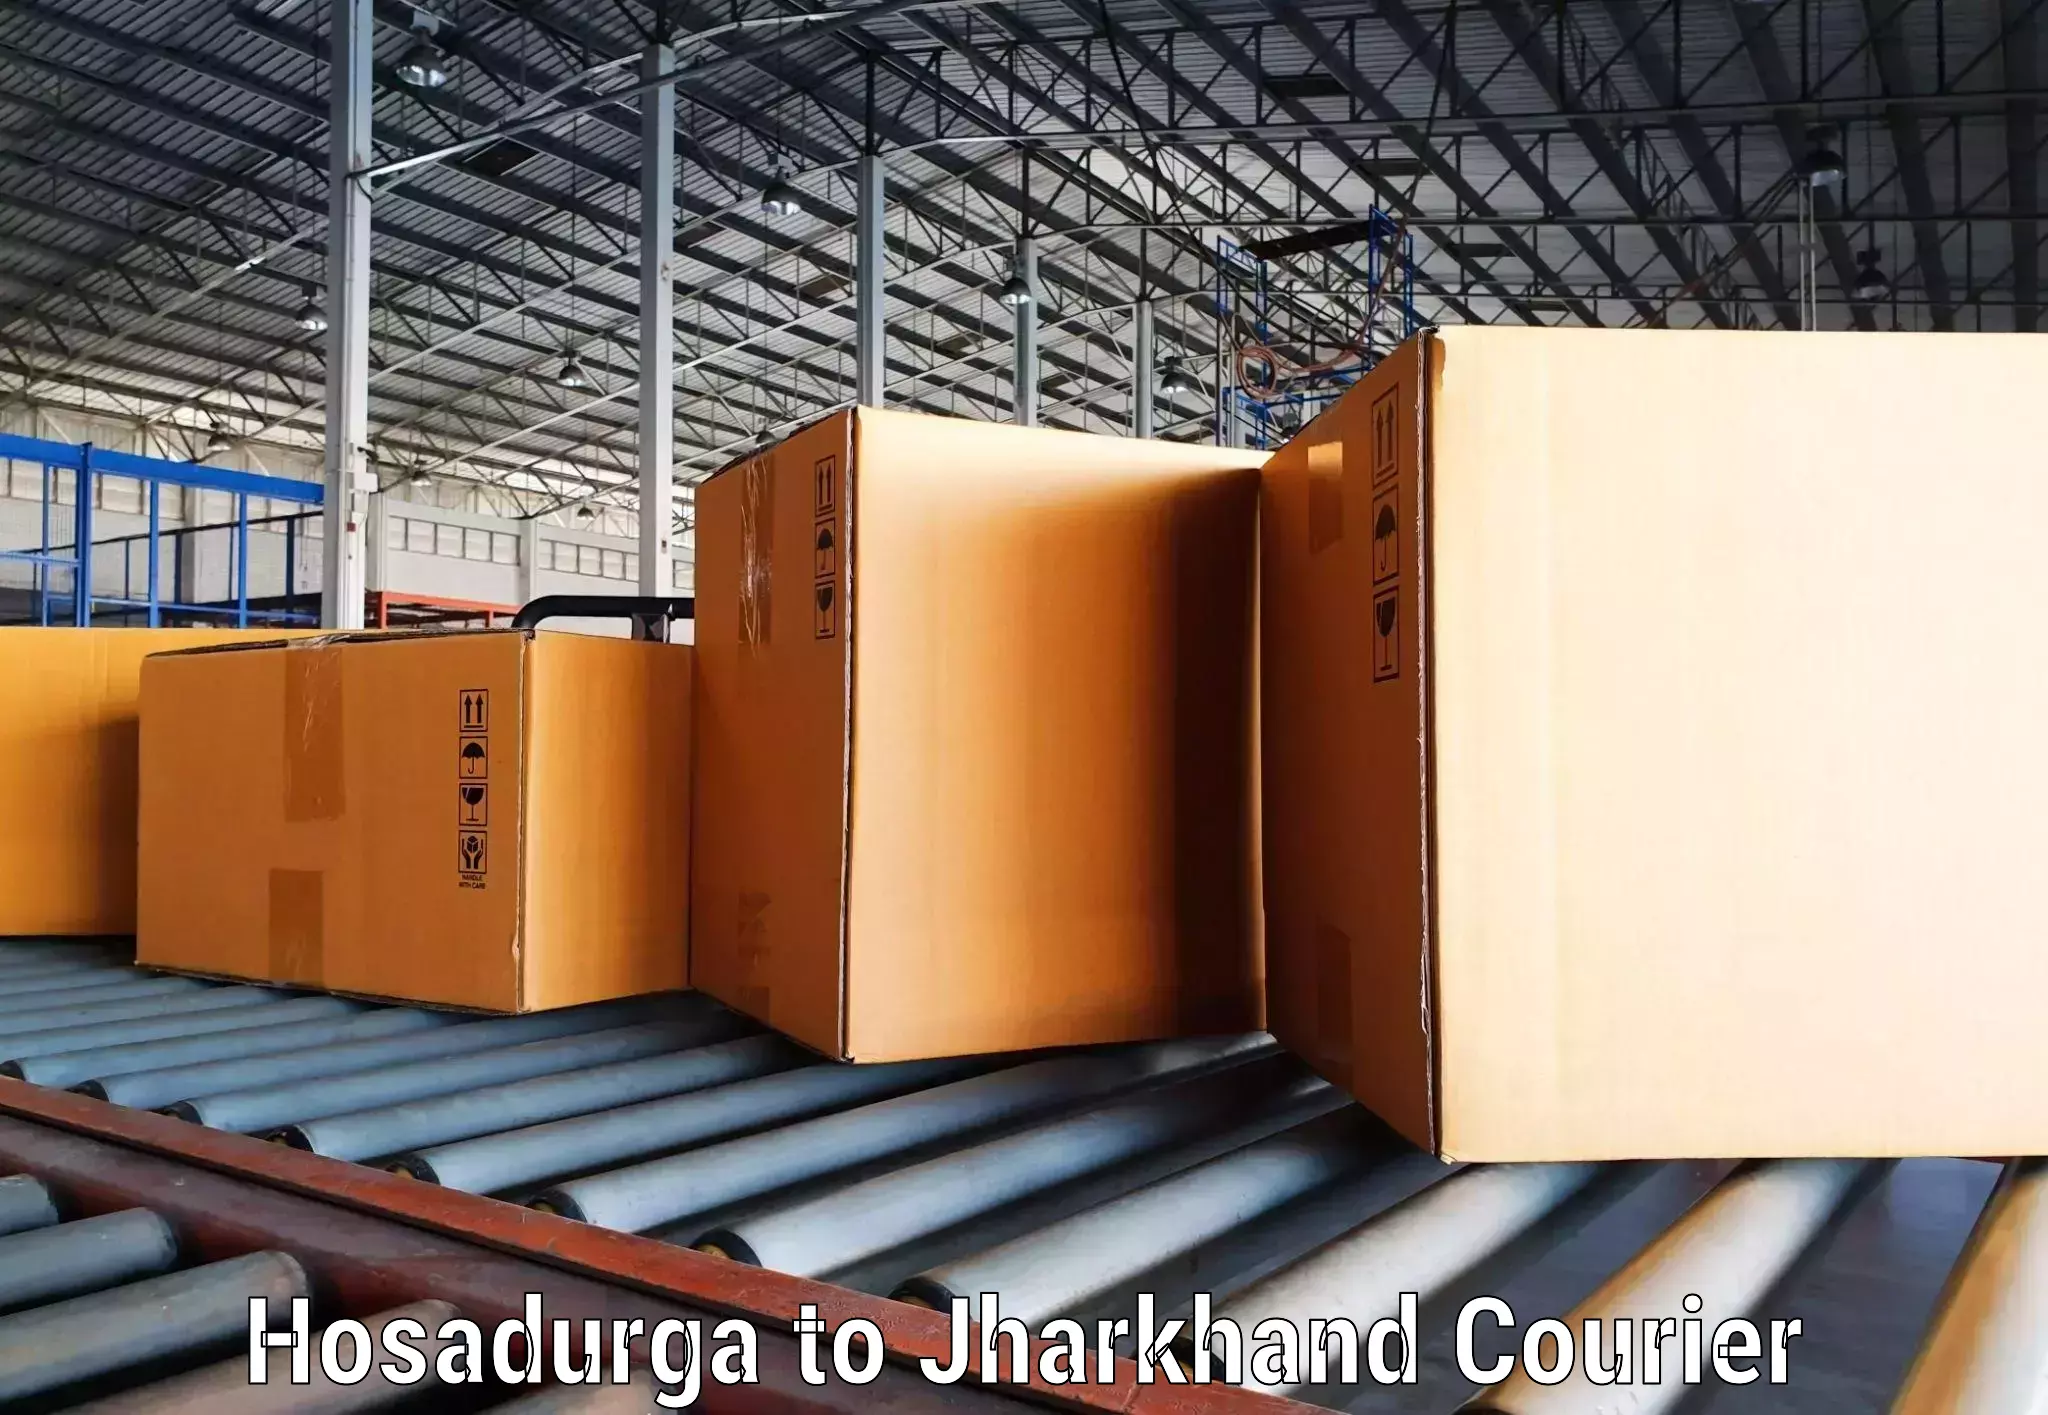 Express courier facilities Hosadurga to Tandwa